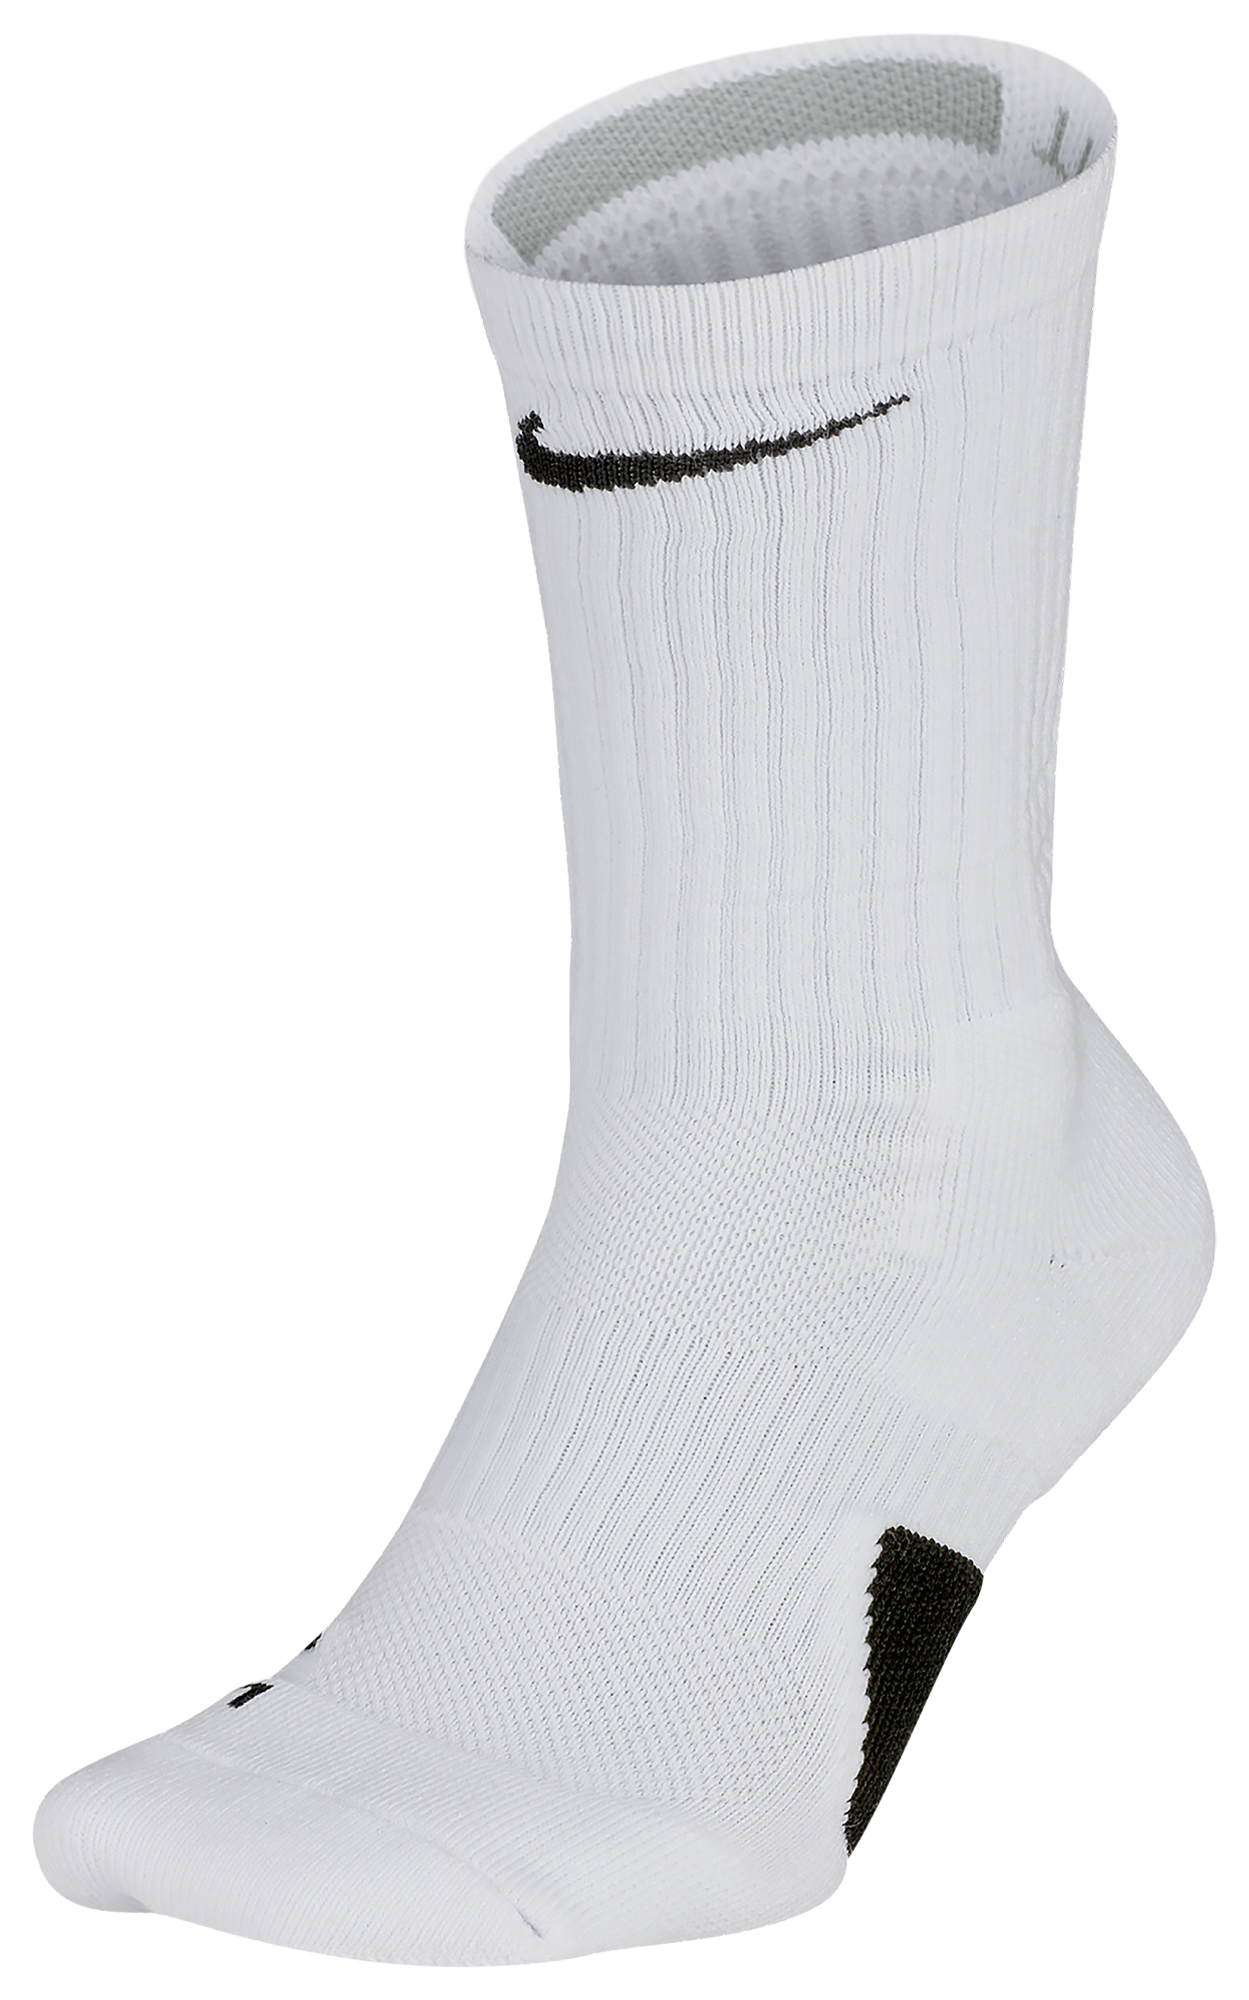 elite socks cheap